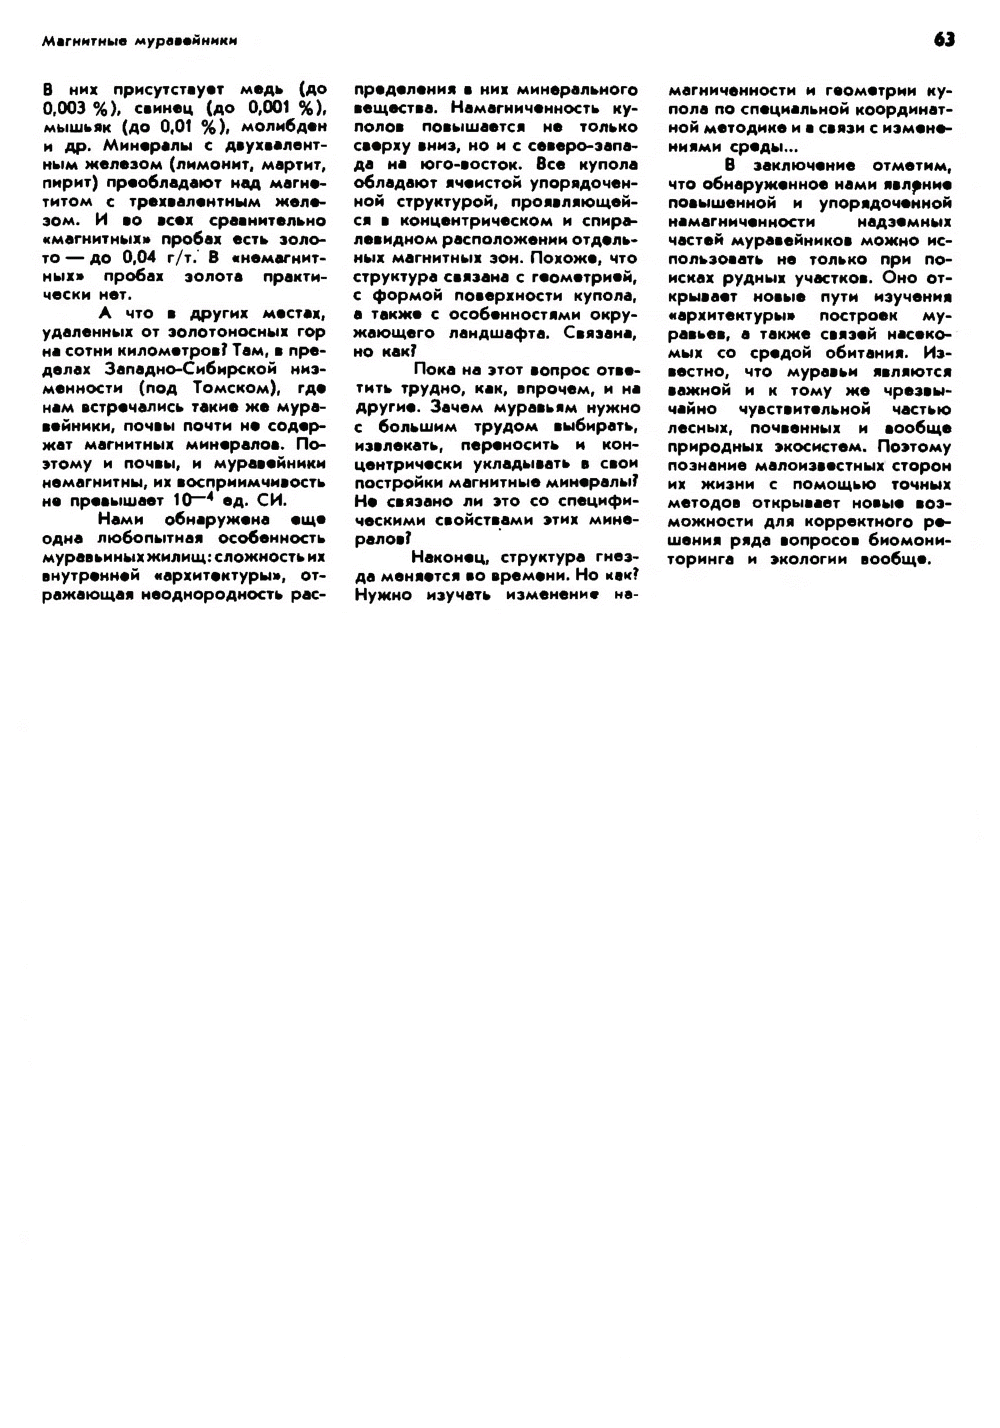 Магнитные муравейники. Ф. Б. Бакшт. Природа, 1990, №7, с.60-63. Фотокопия №4